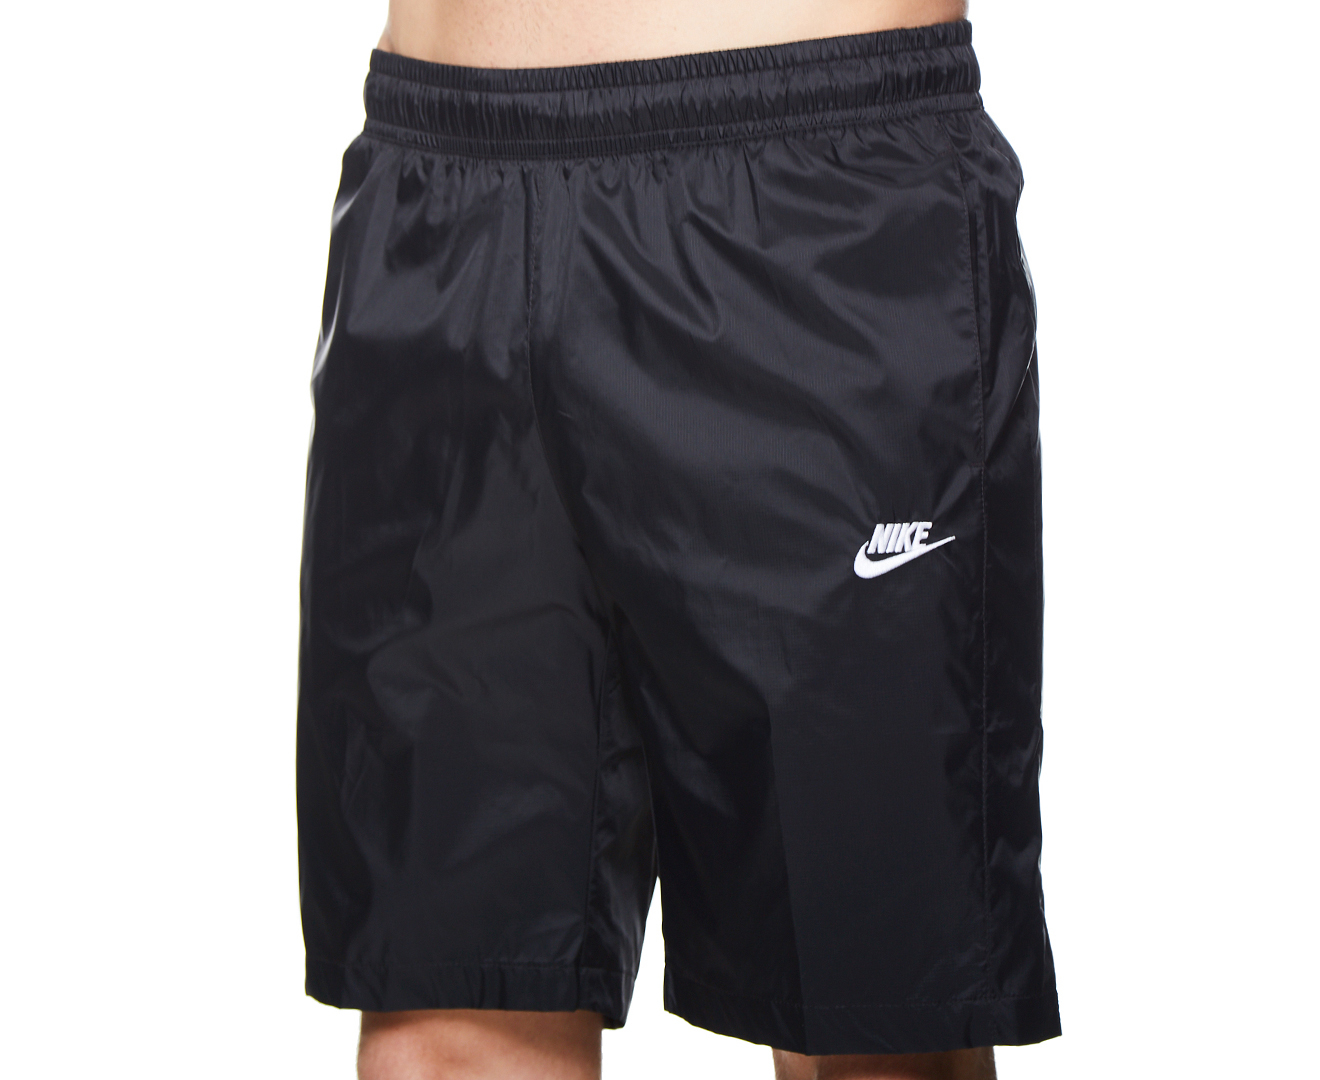 Nike Men's CE Woven Core Track Short - Black | Catch.com.au